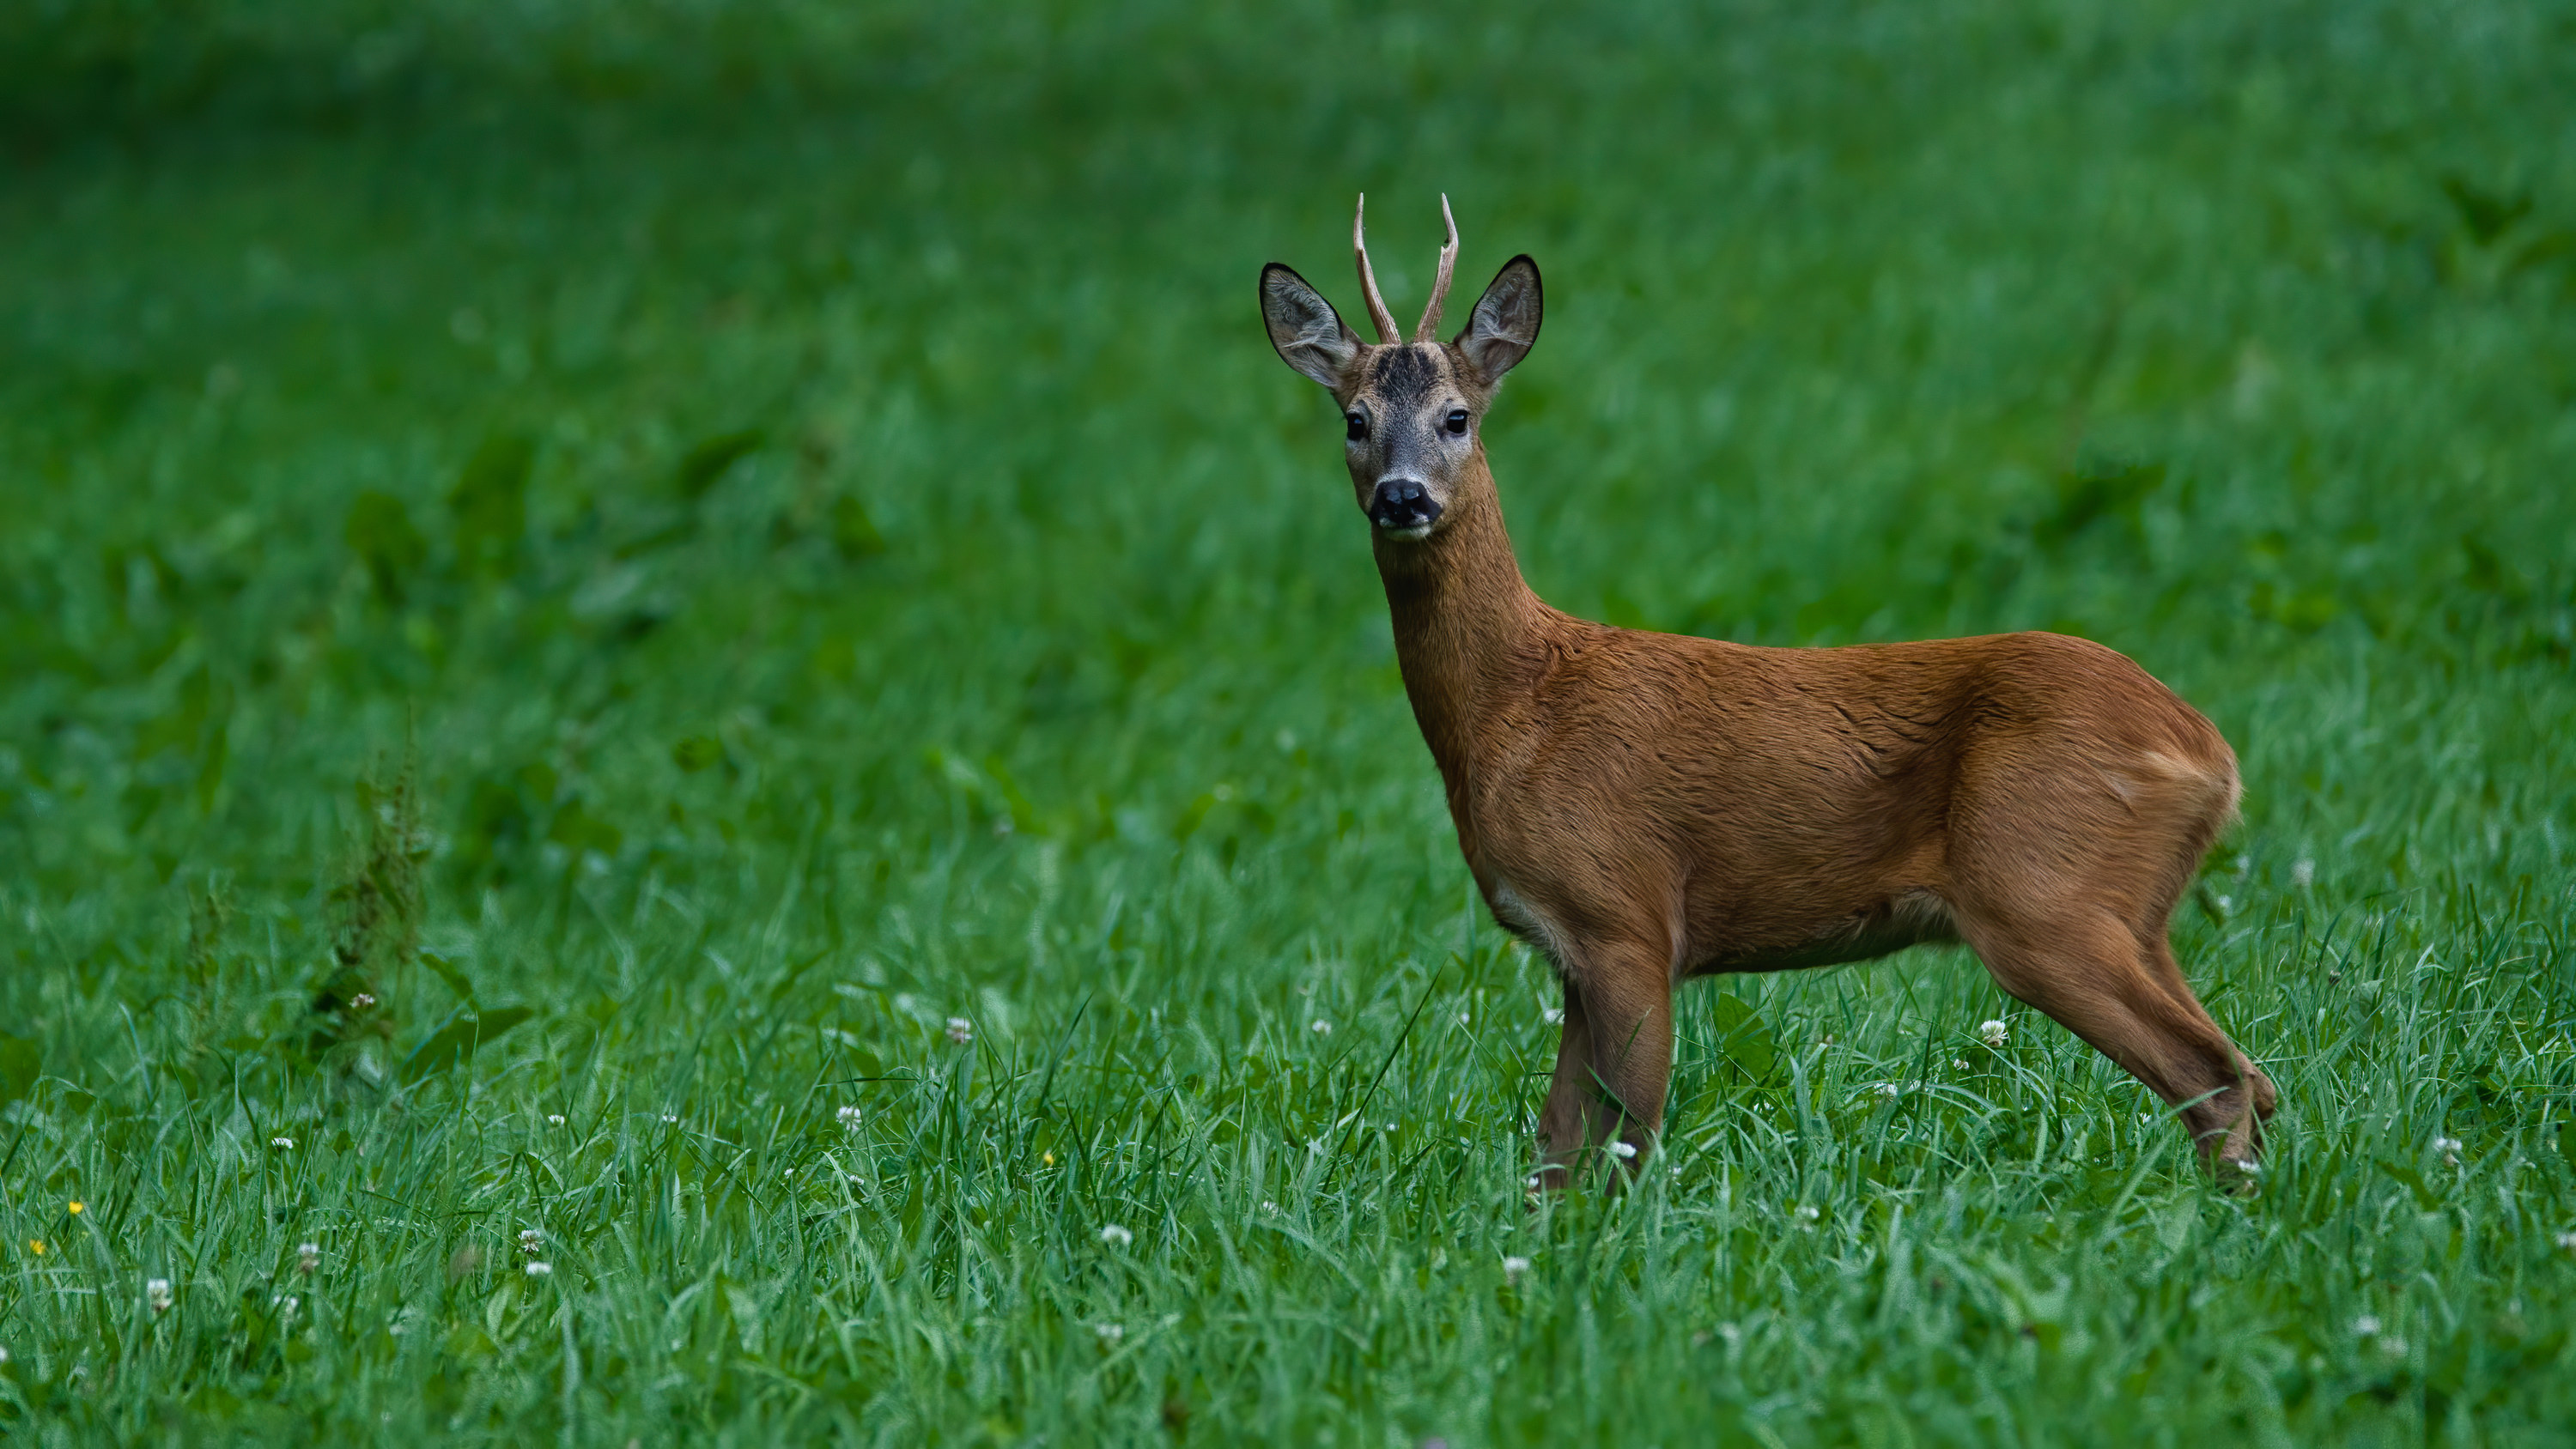 Photo of a deer in a field